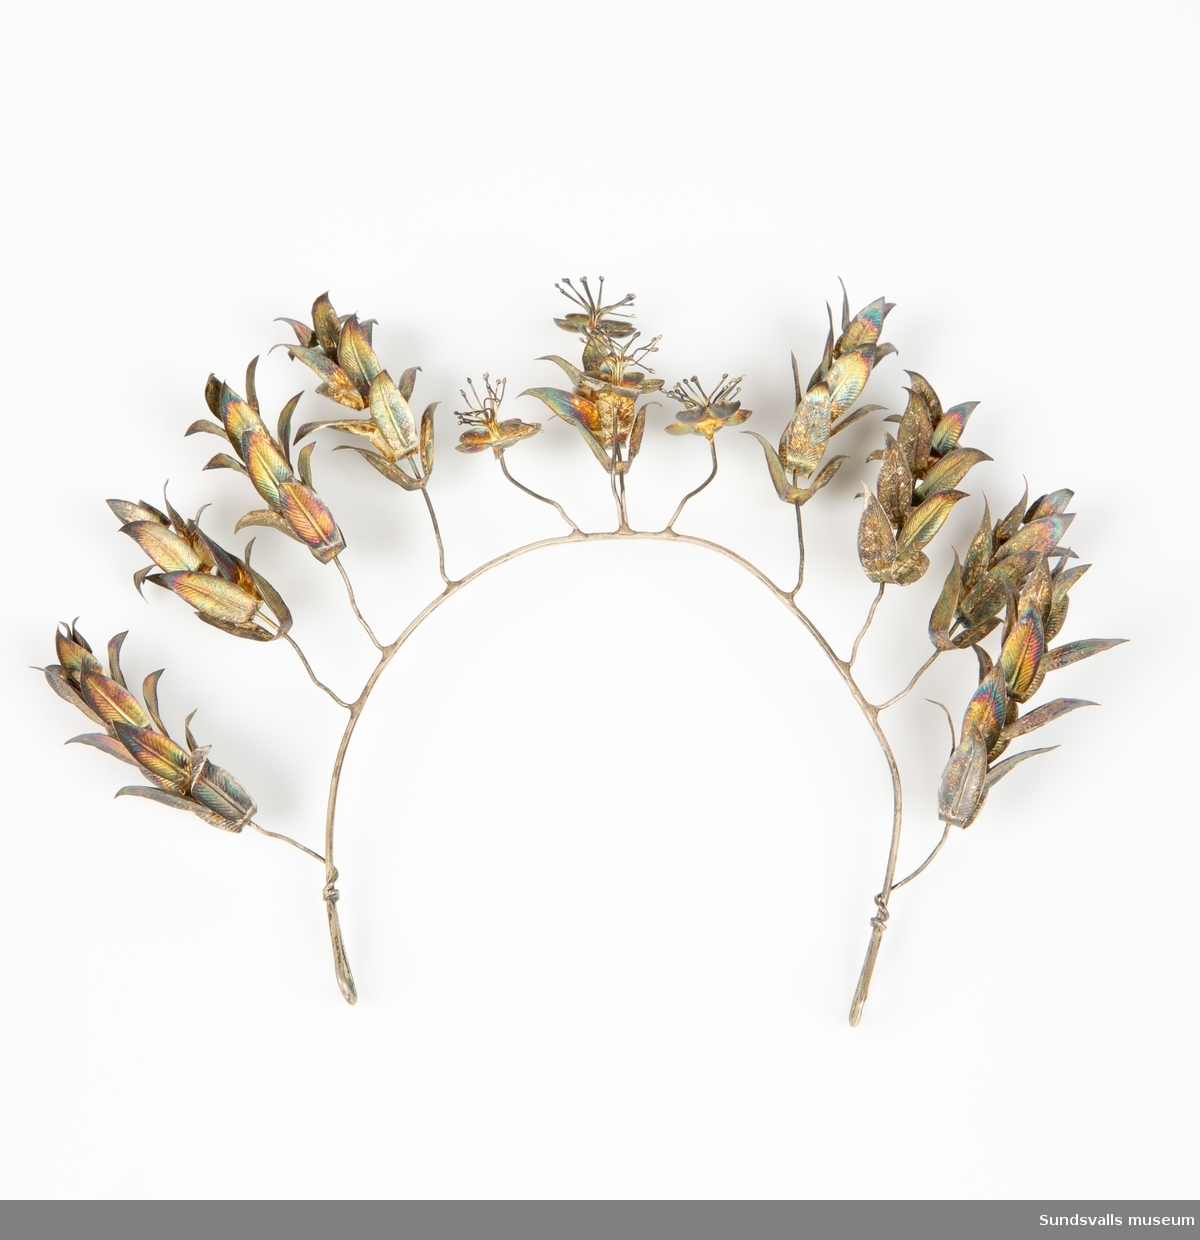 Diadem i böjd metalltråd med en ögla i var ände. Dekoration i form av metalltrådar med blommor och blad är fästade runt den böjda tråden.